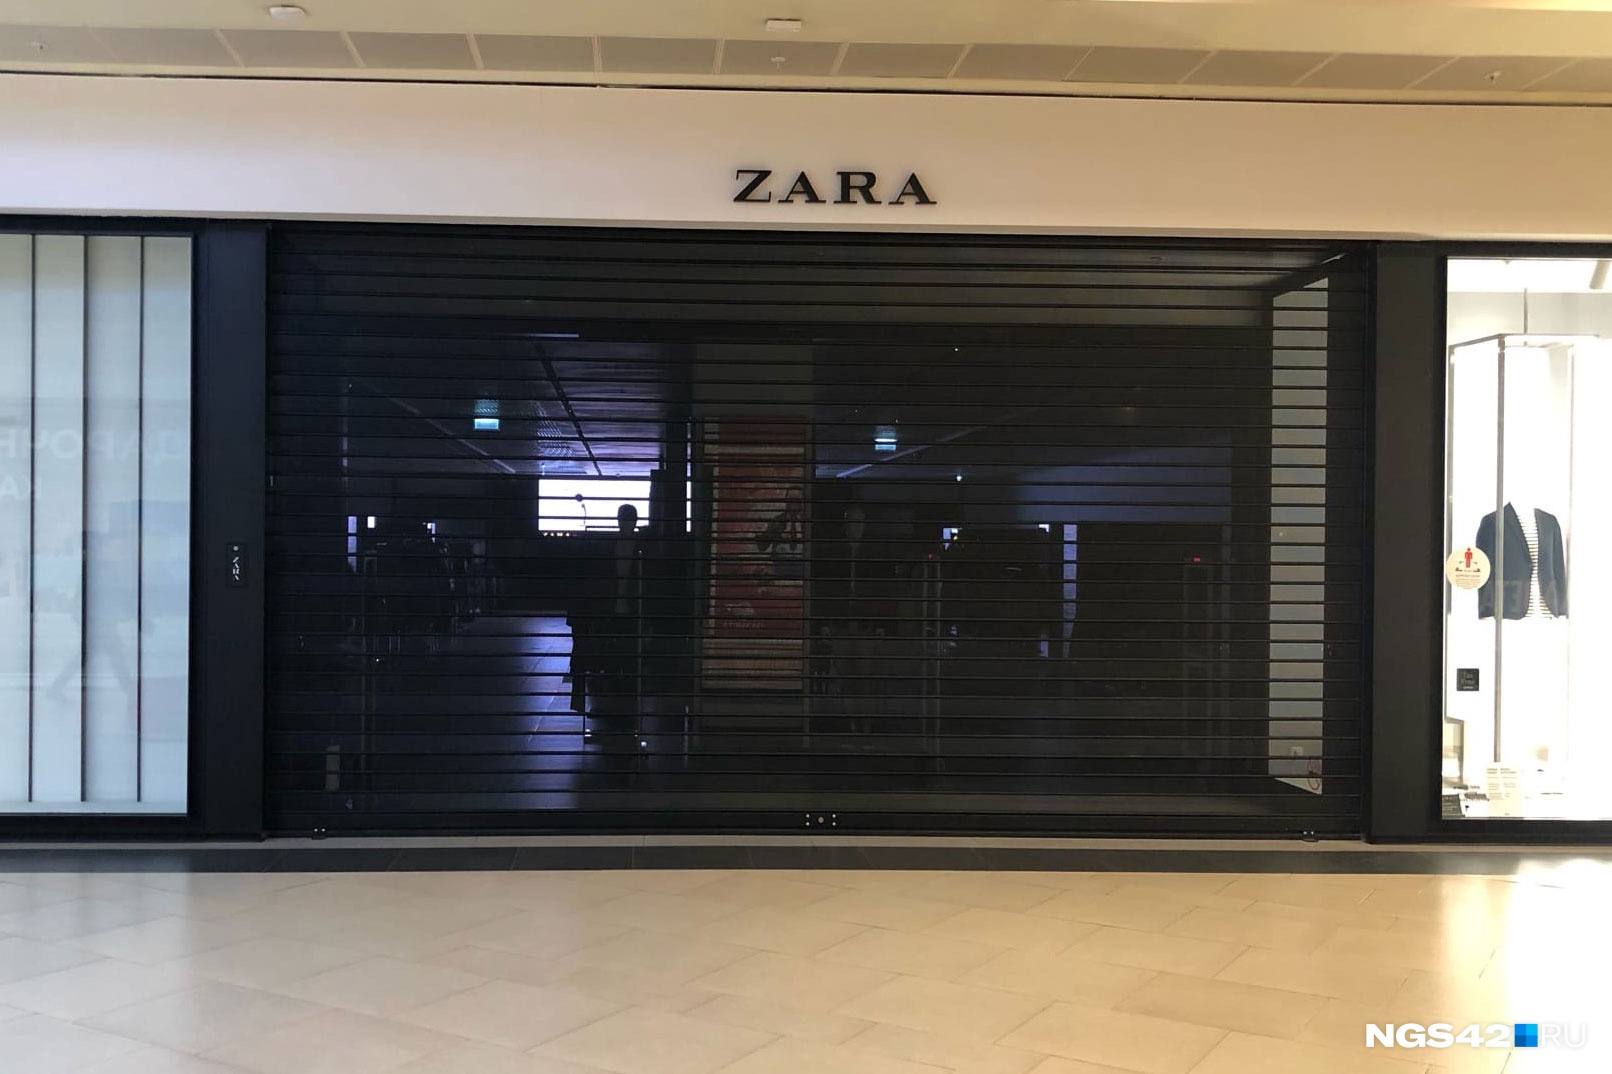 В Кузбассе закрылись магазины Zara, Massimo Dutti и Bershka